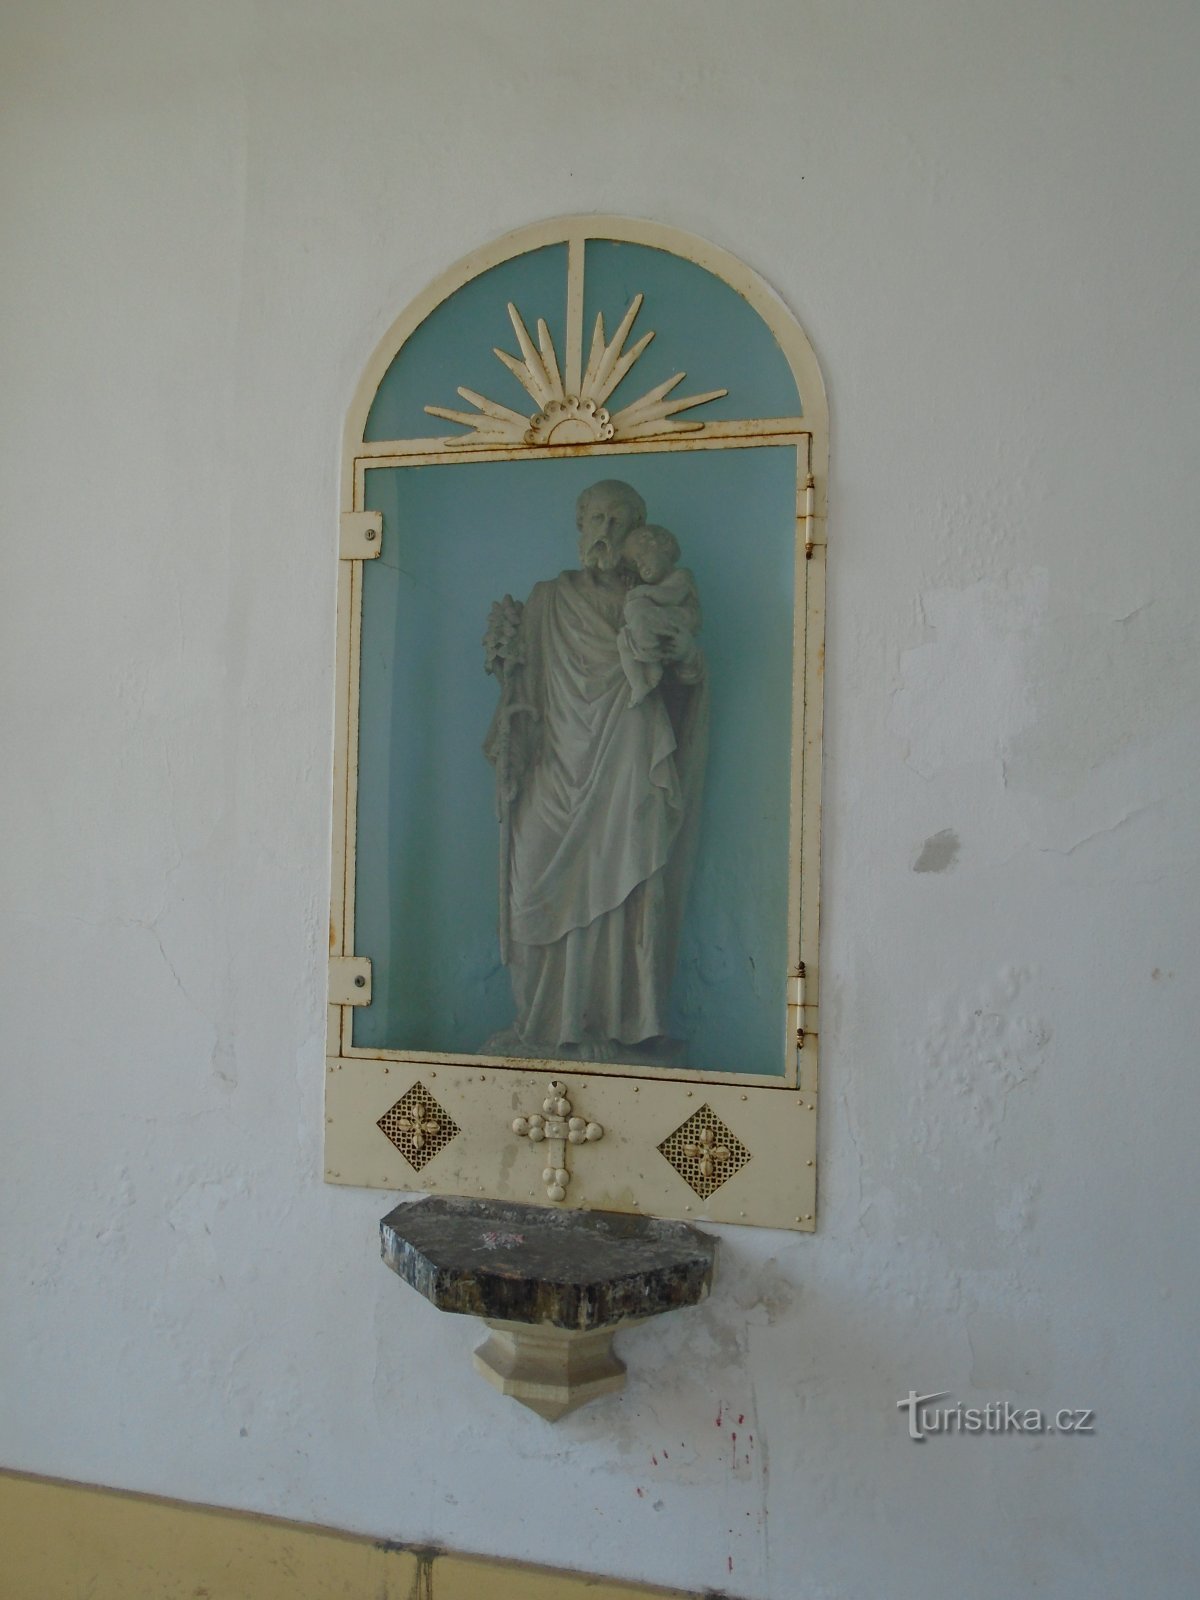 Kaplica cmentarna św. Krzyże (Trutnov)